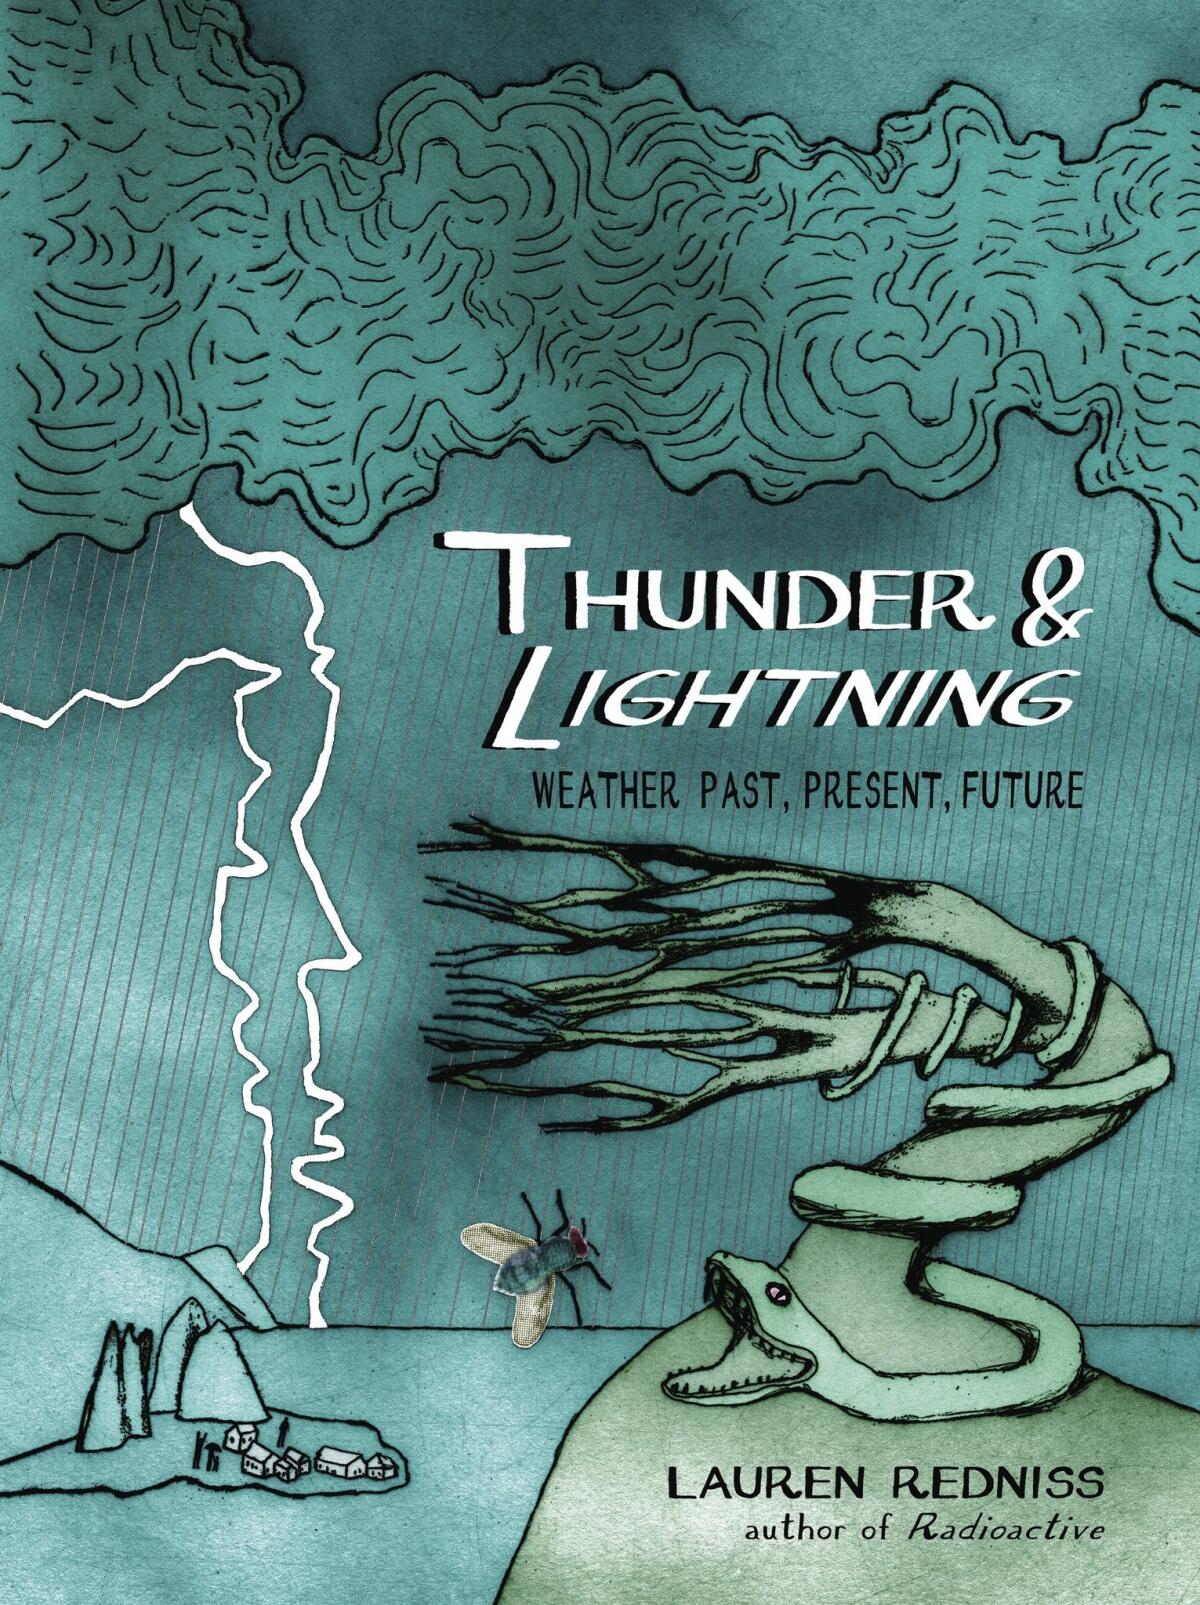 "Thunder & Lightning" by Lauren Redniss